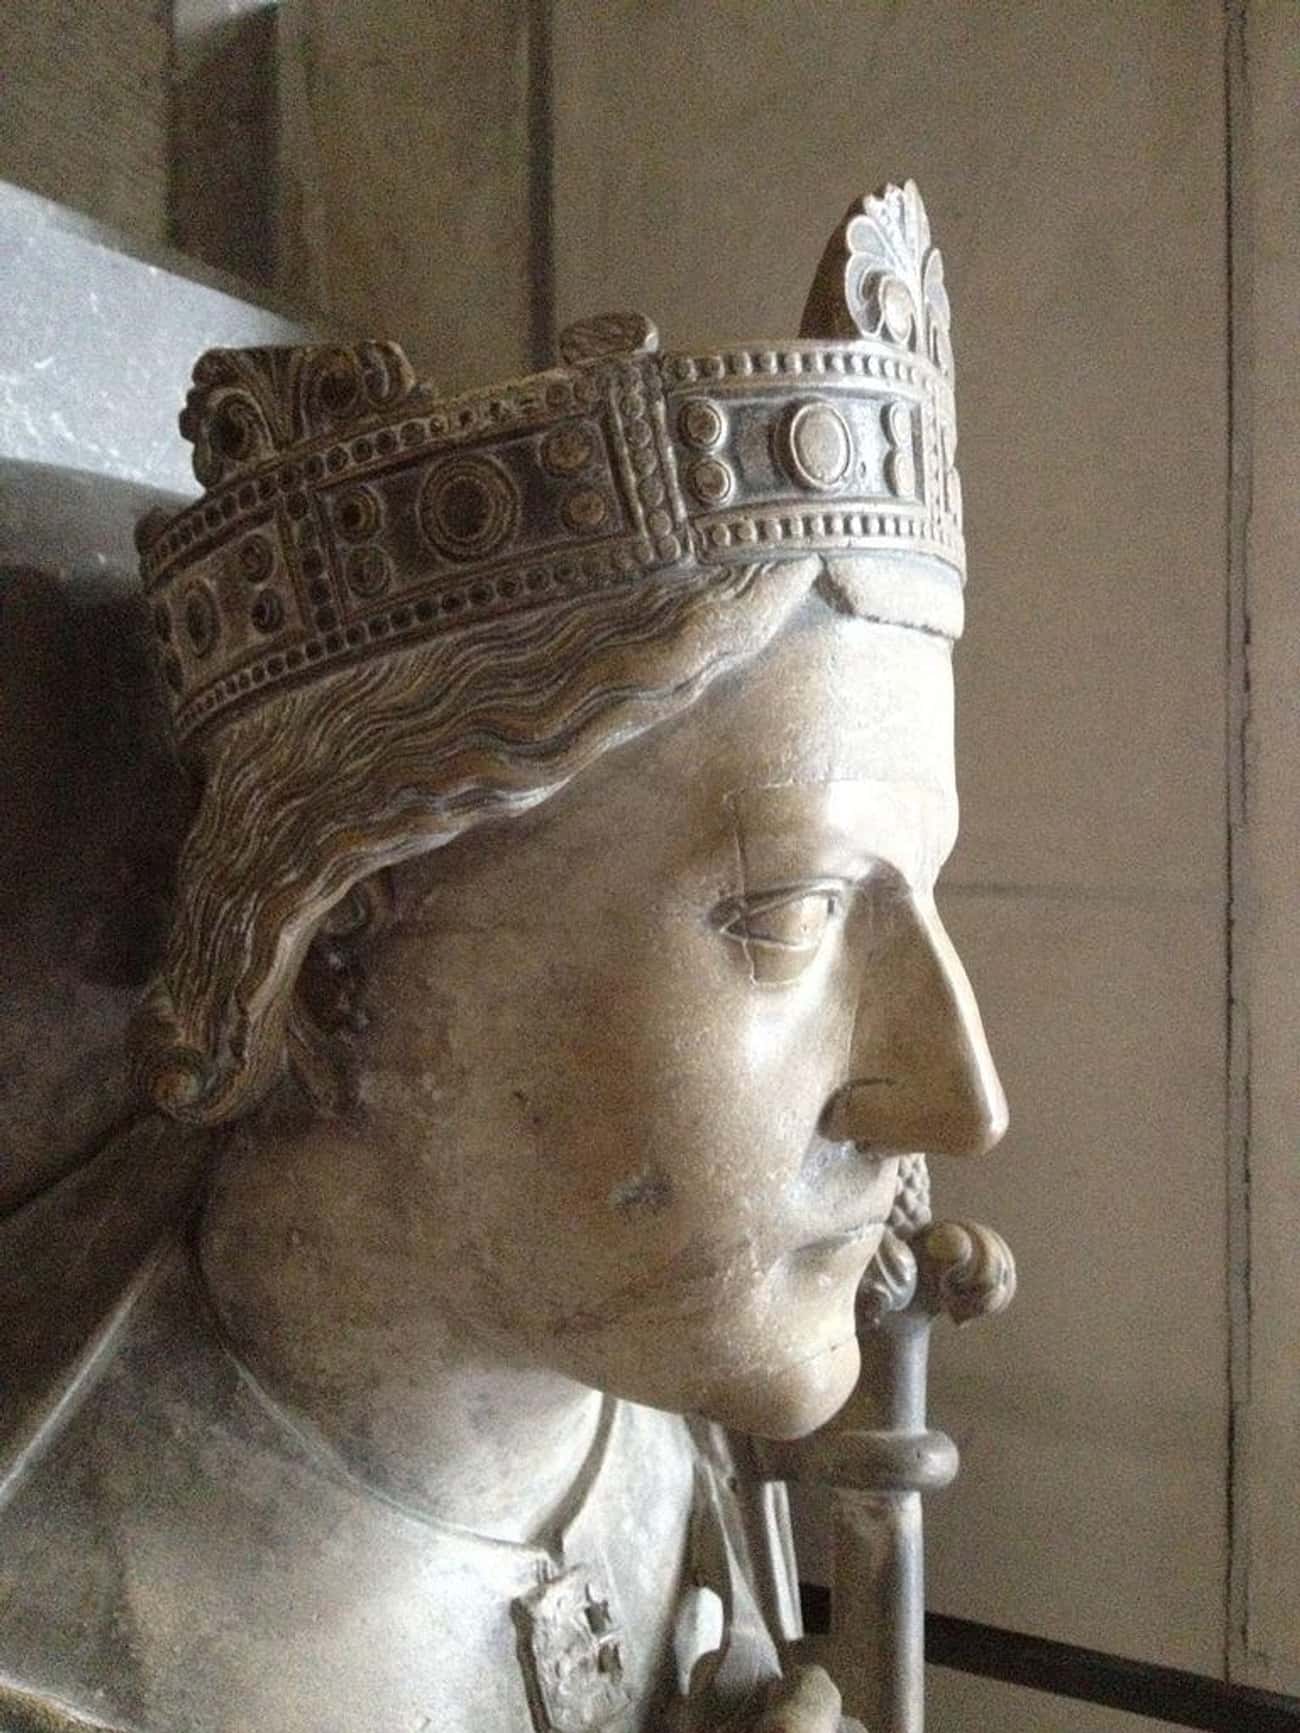 King Richard I Was Both 'Cœur de Lion' And 'Oc-e-Non'